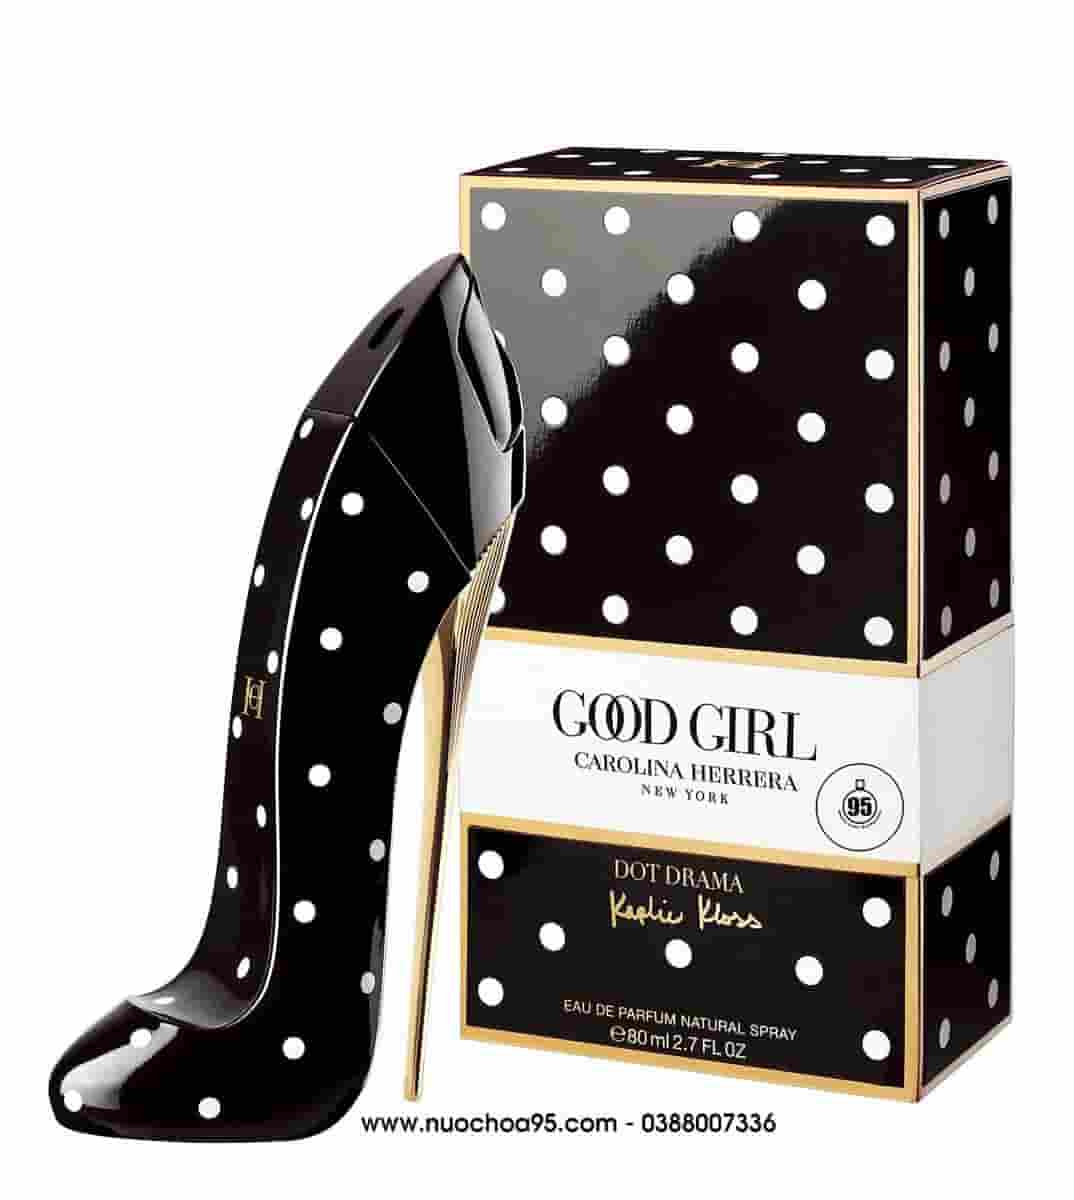 Nước hoa Good Girl Dot Drama Collector Edition